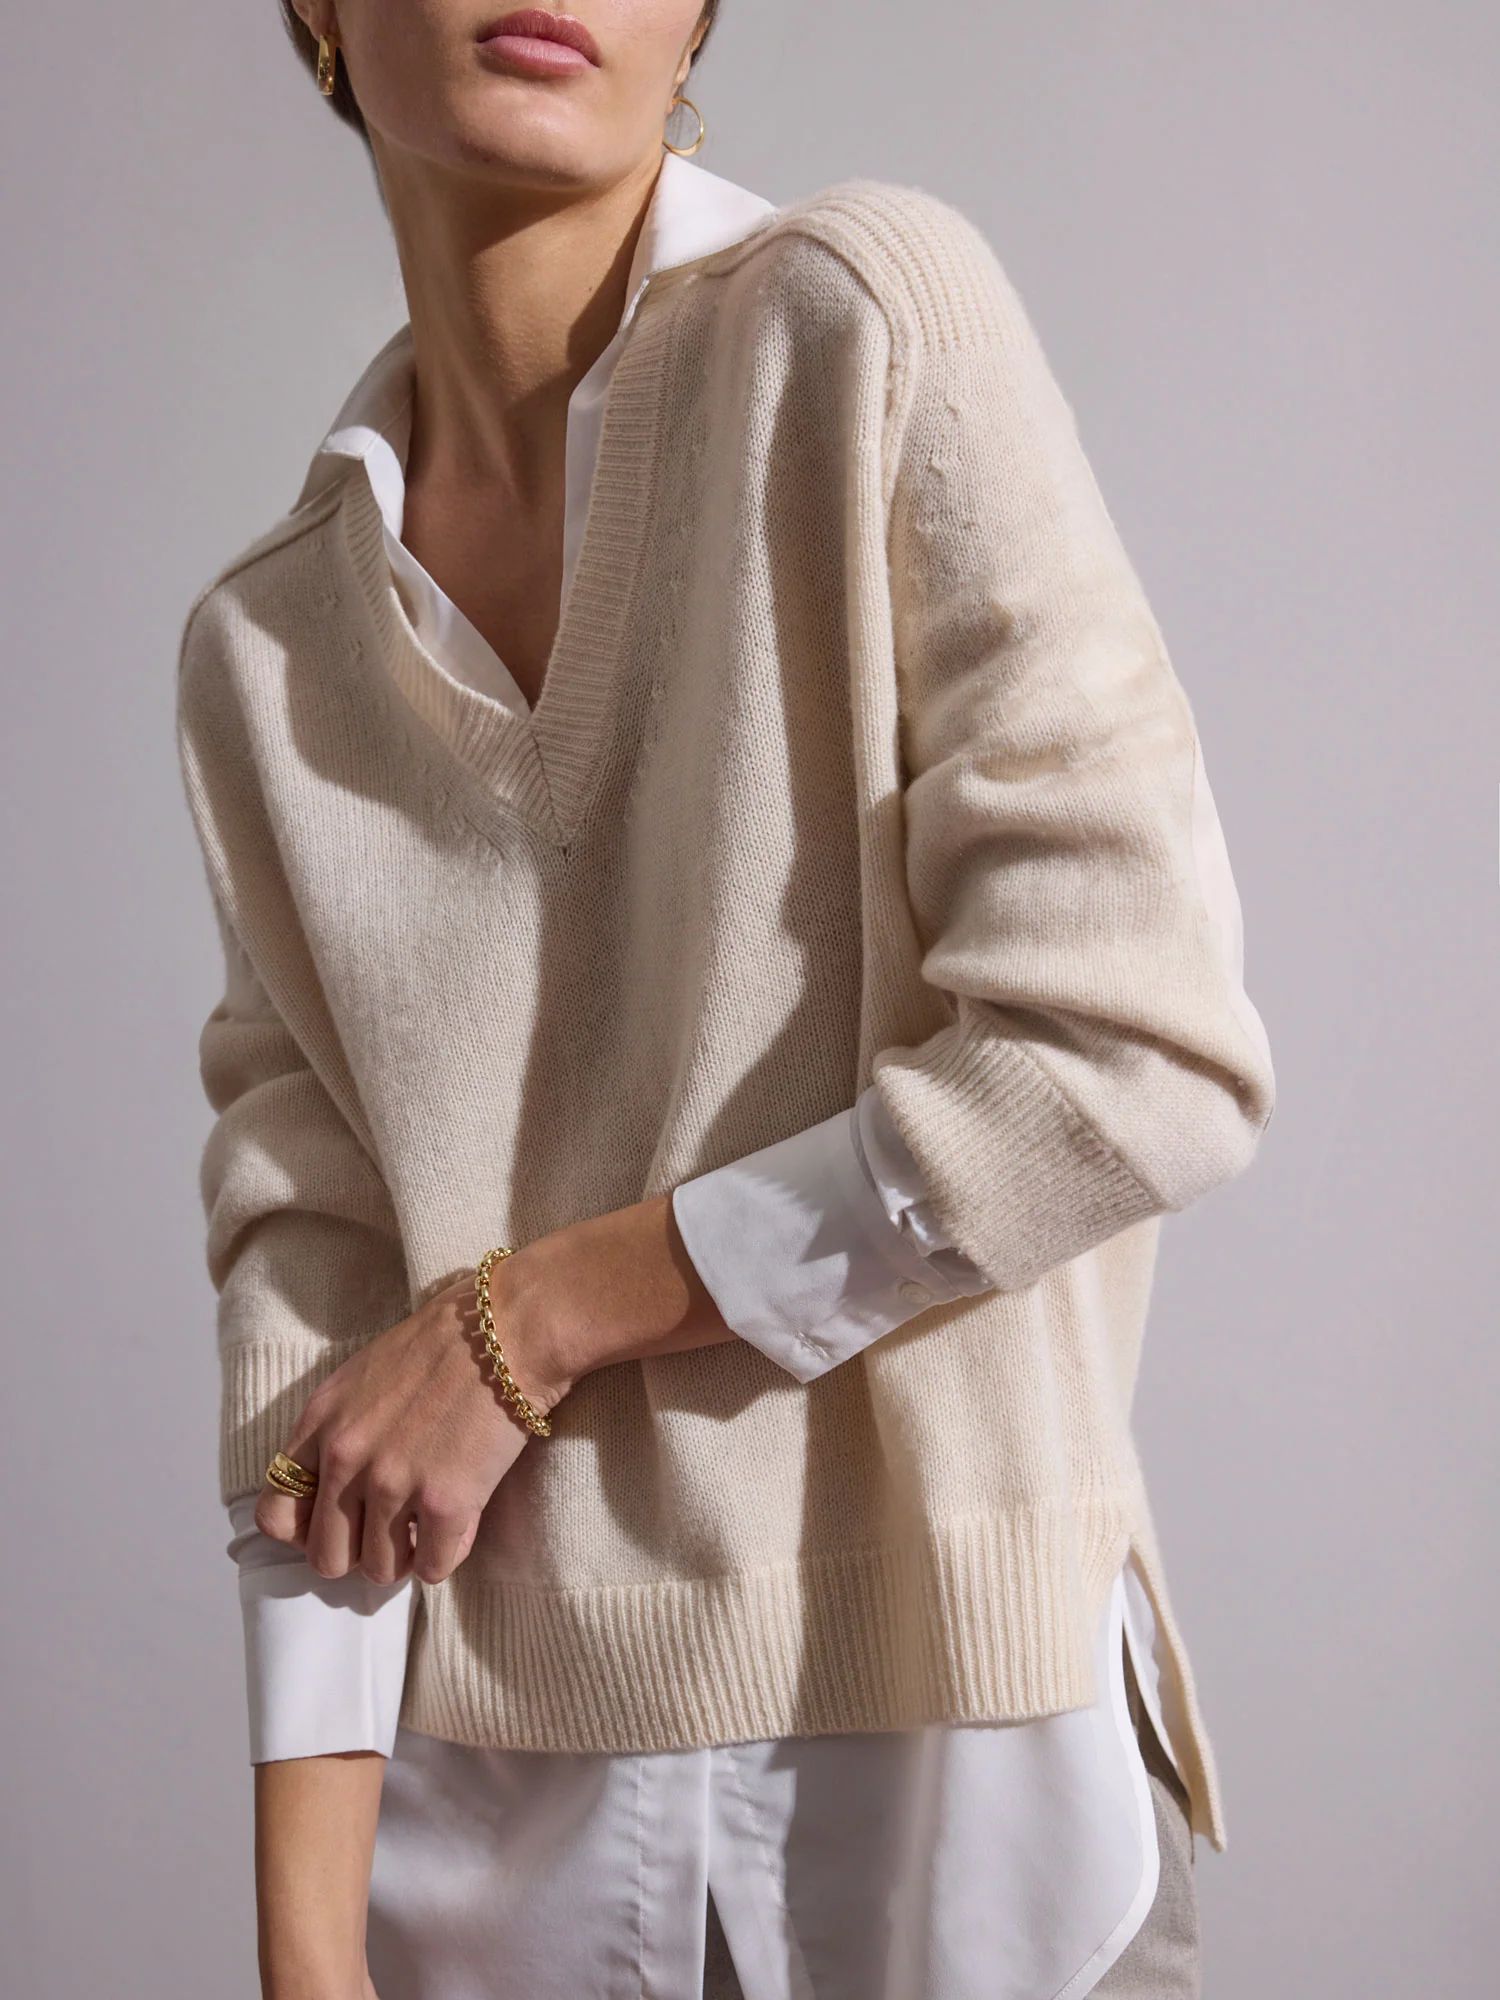 Brochu Walker Women's Layered V-neck Looker Sweater in Tan | Brochu Walker